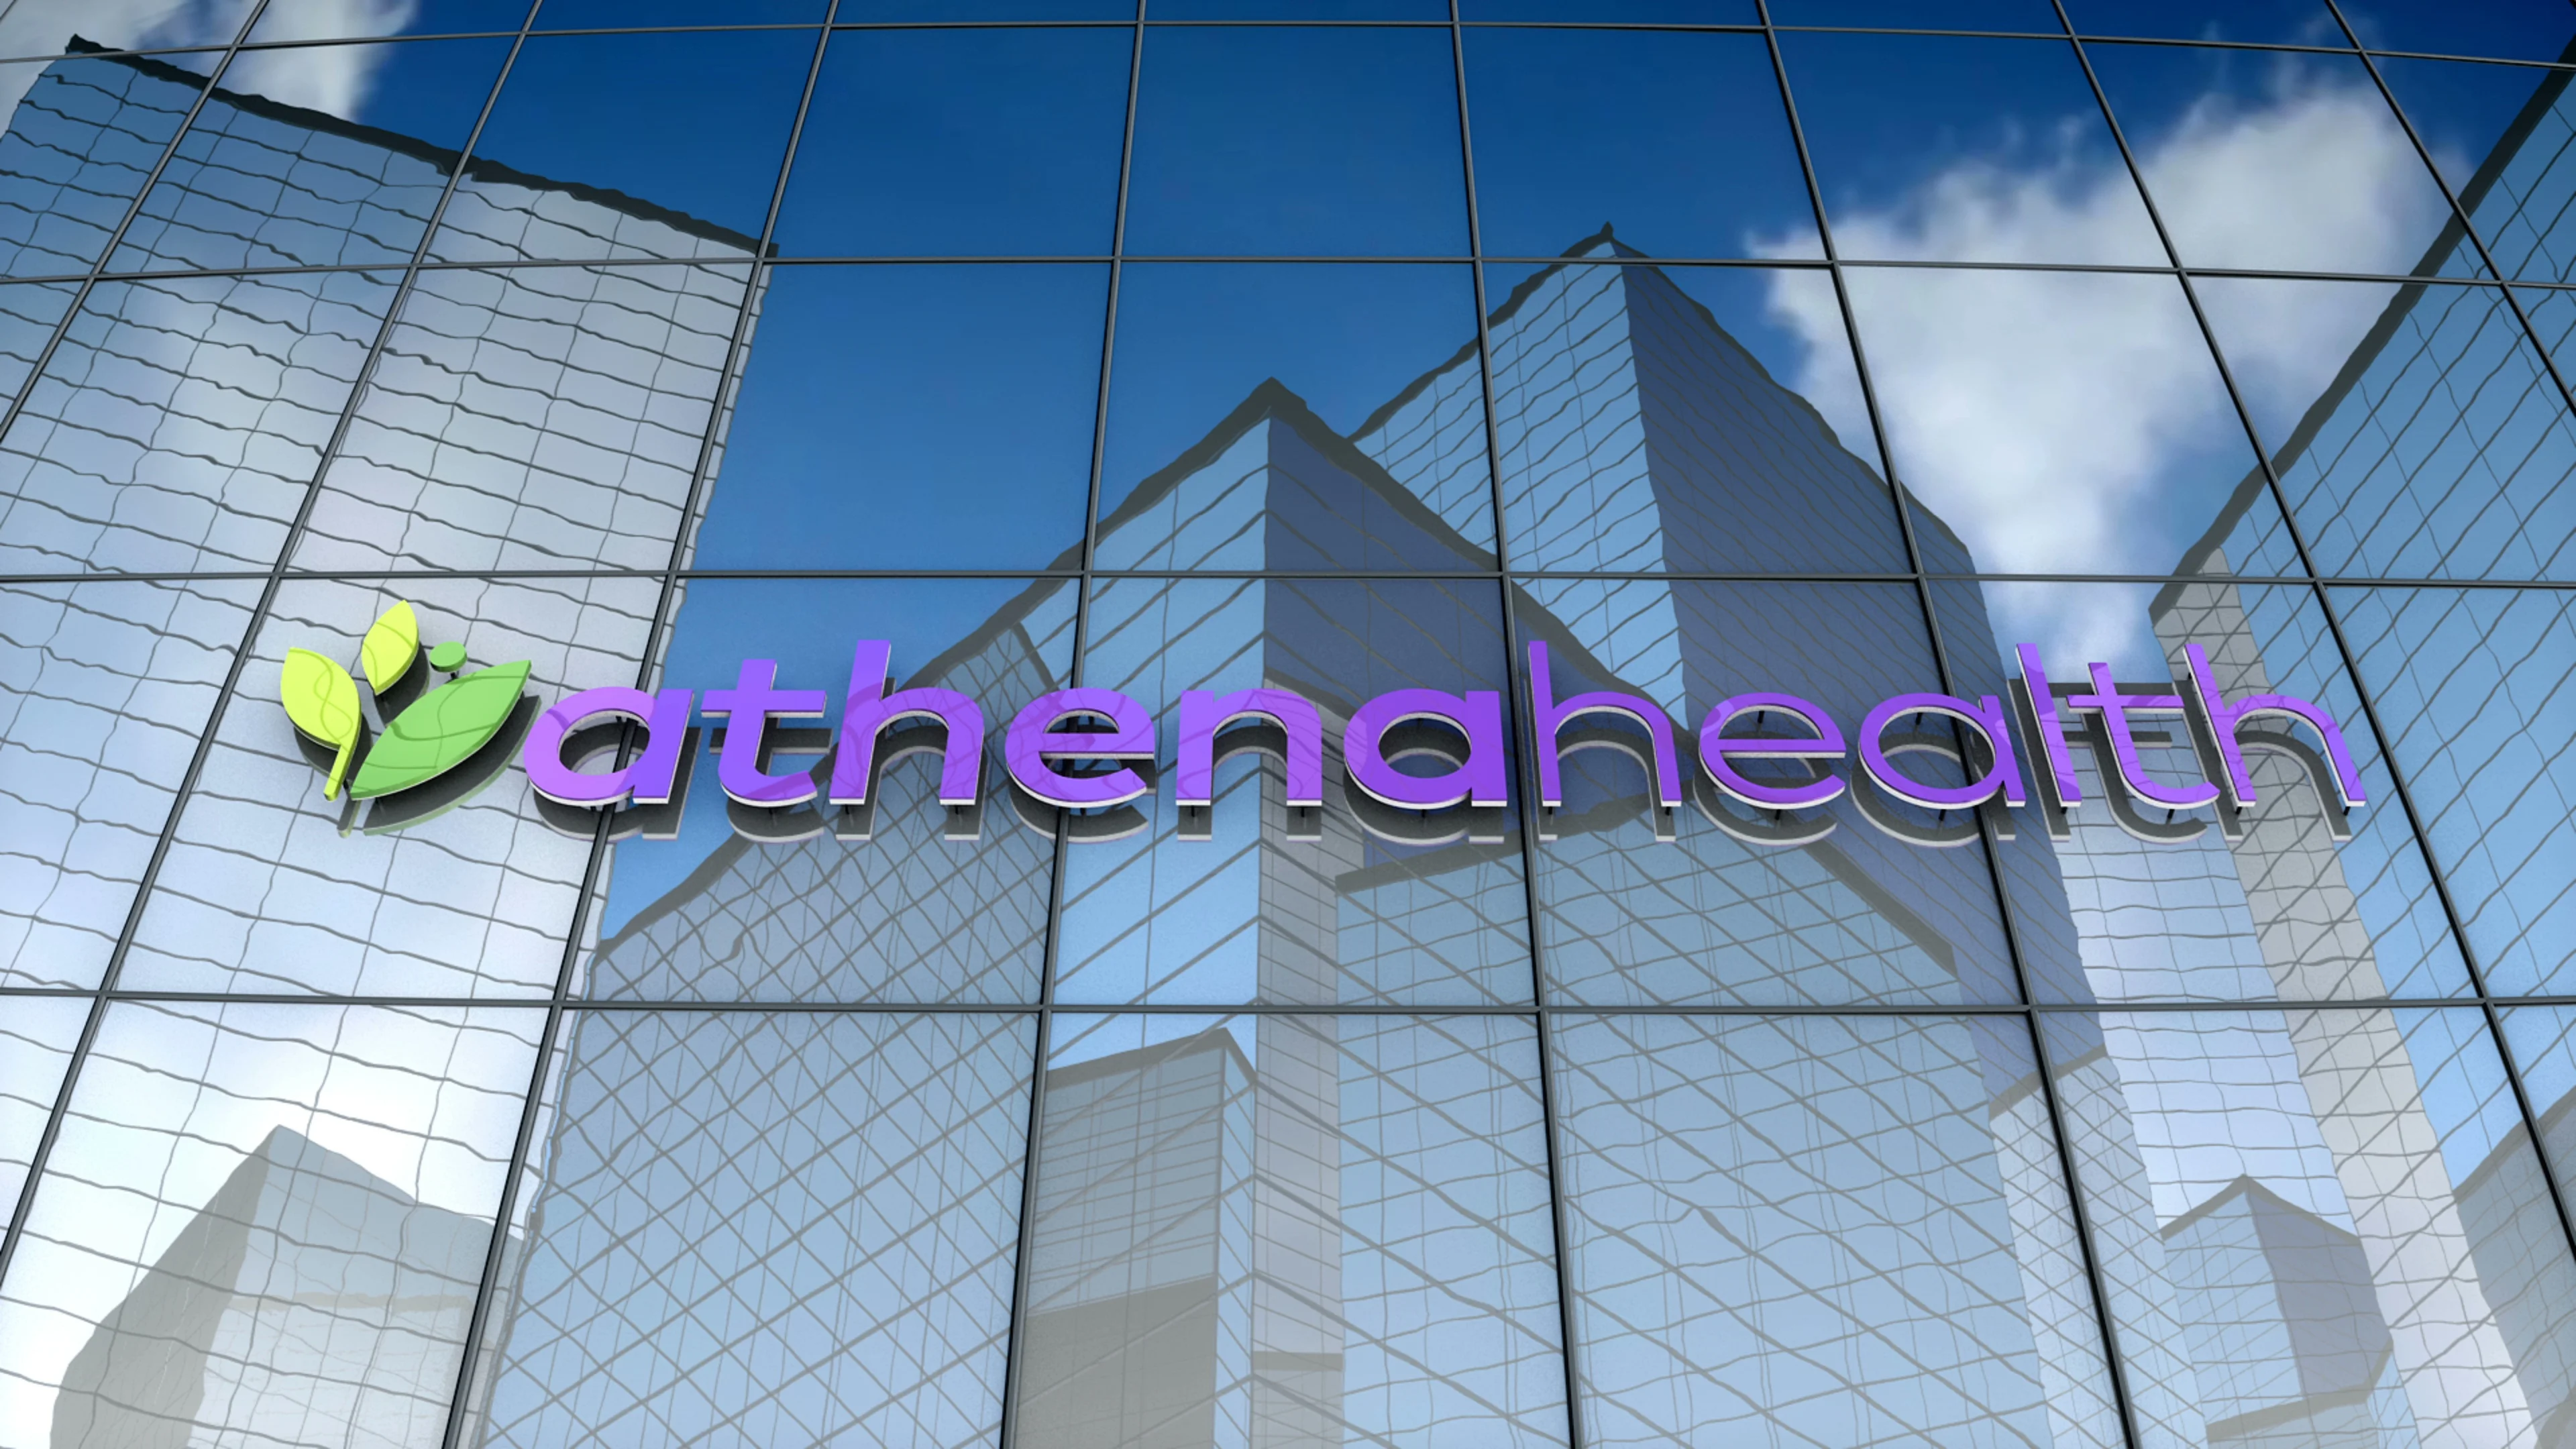 athenahealth logo black